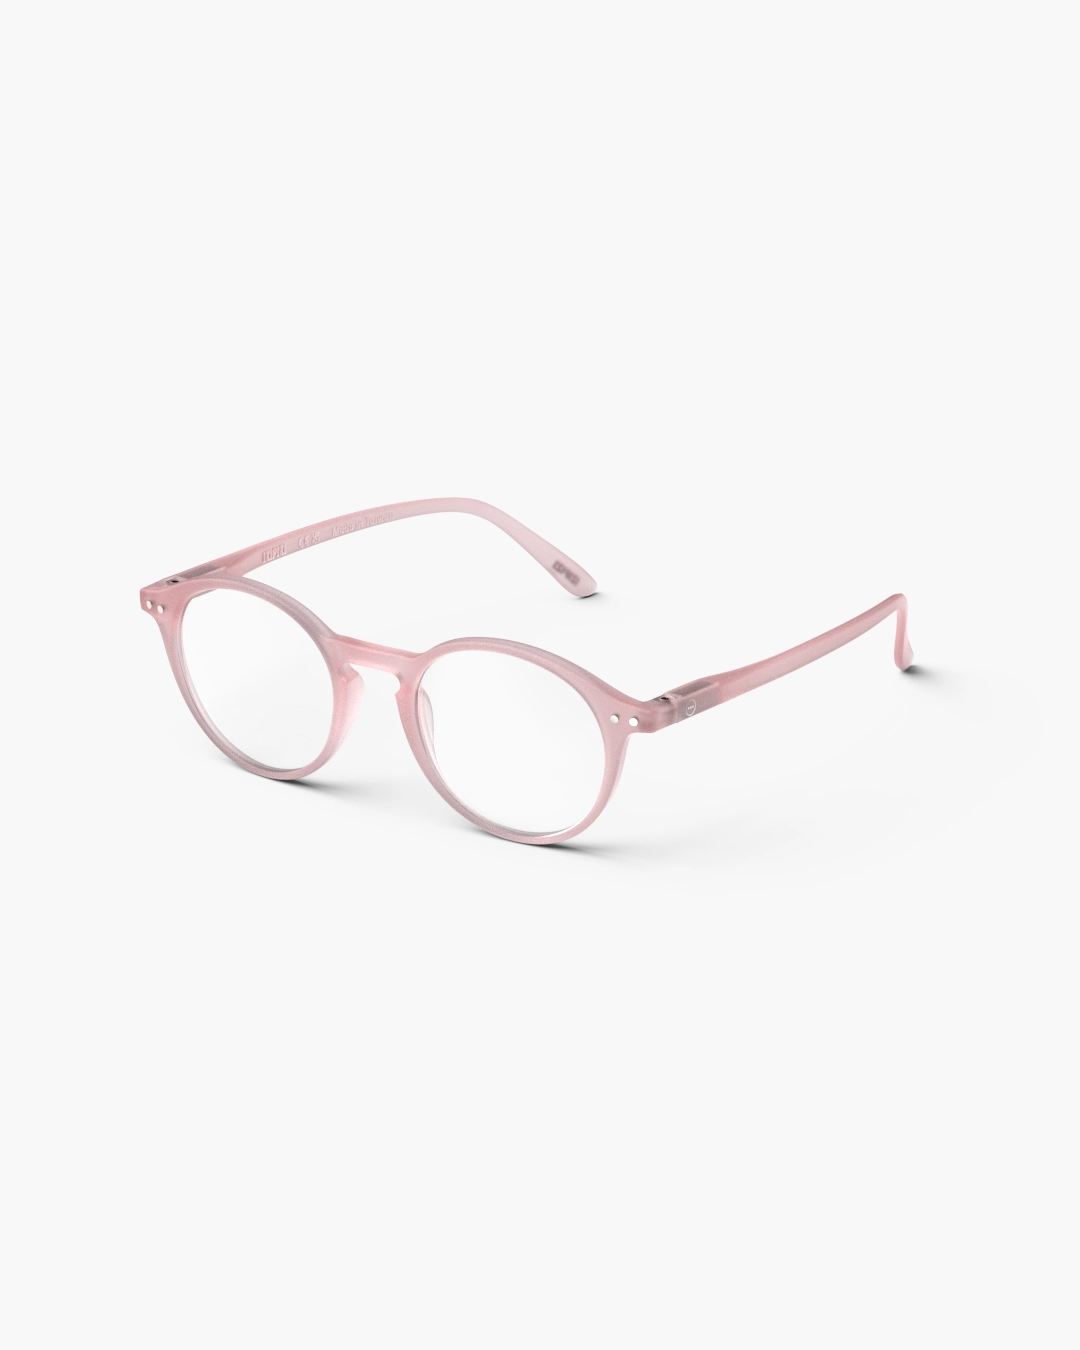 IZIPIZI #D Pink Reading Glasses